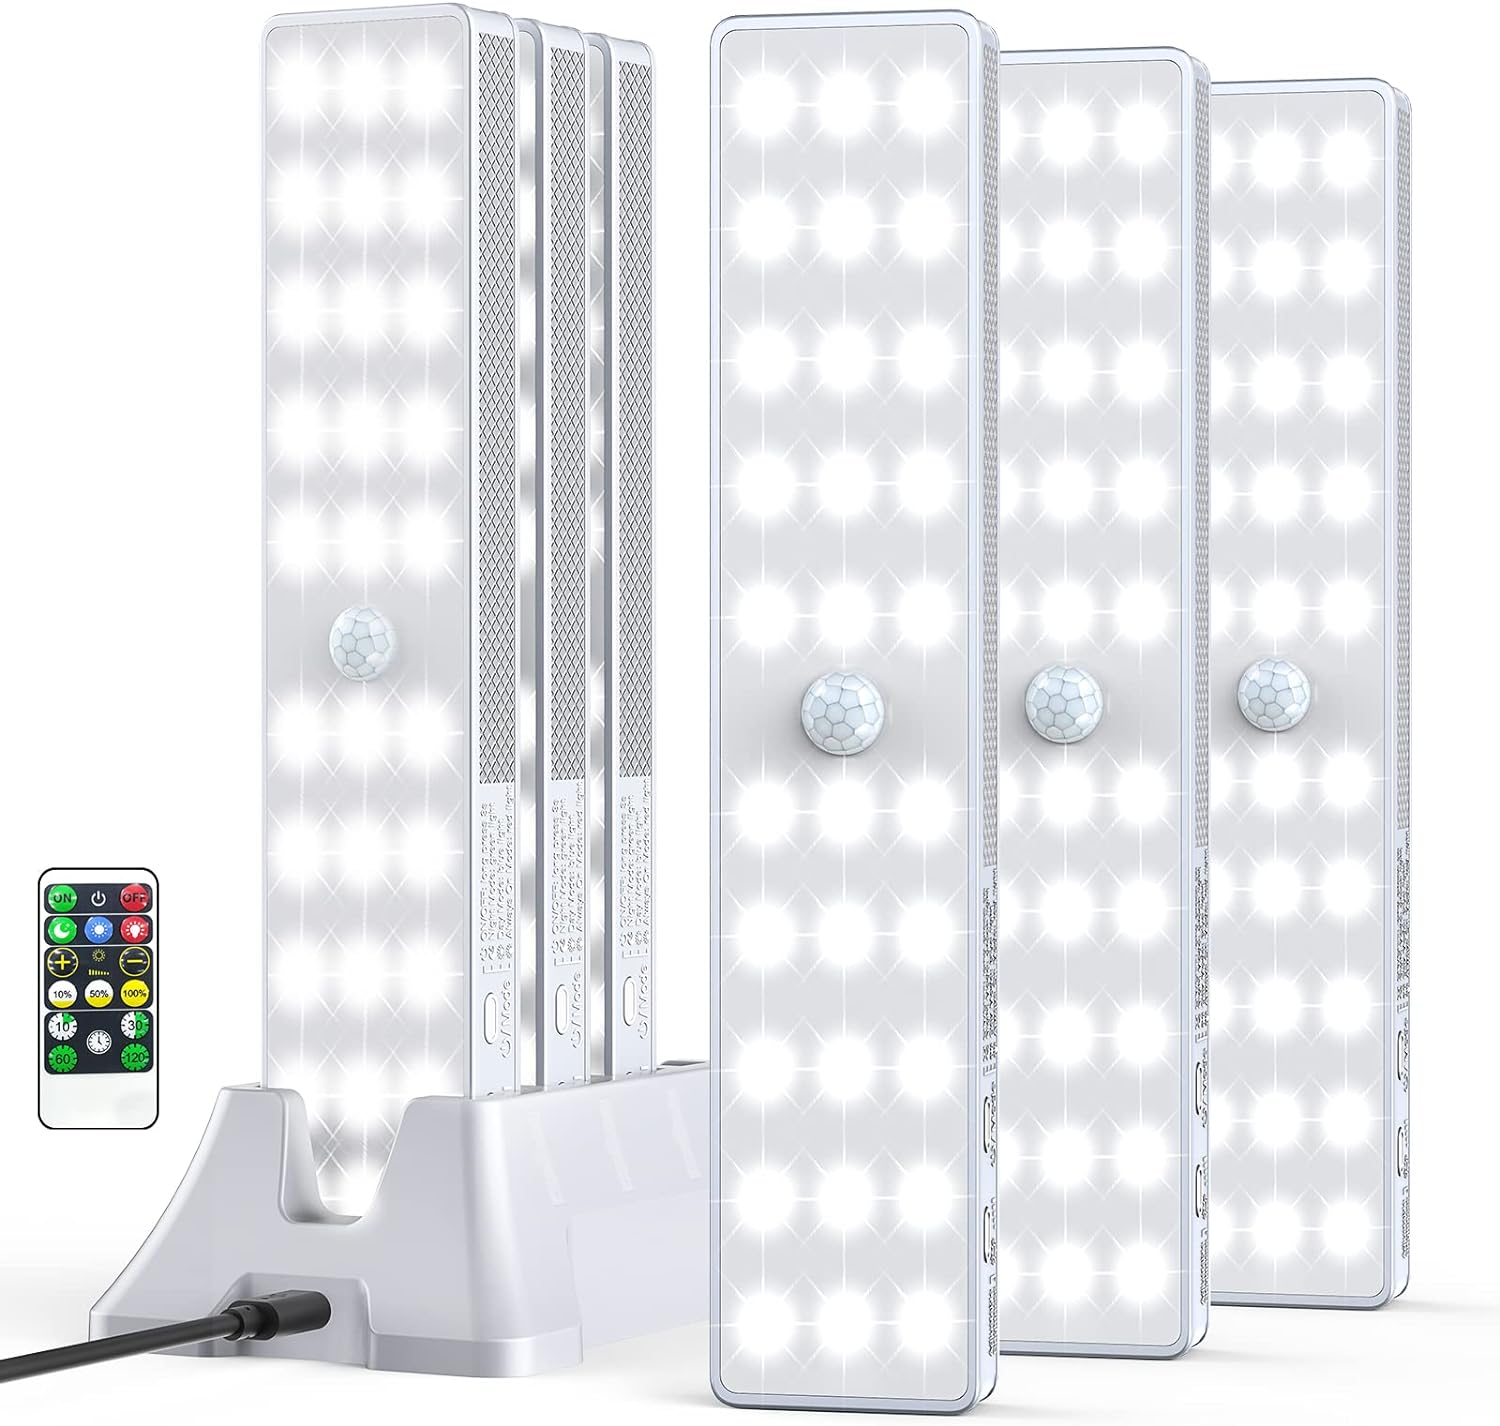 Paquete de 2 luces para debajo del gabinete, 78 luces LED inalámbricas con  sensor de movimiento para…Ver más Paquete de 2 luces para debajo del